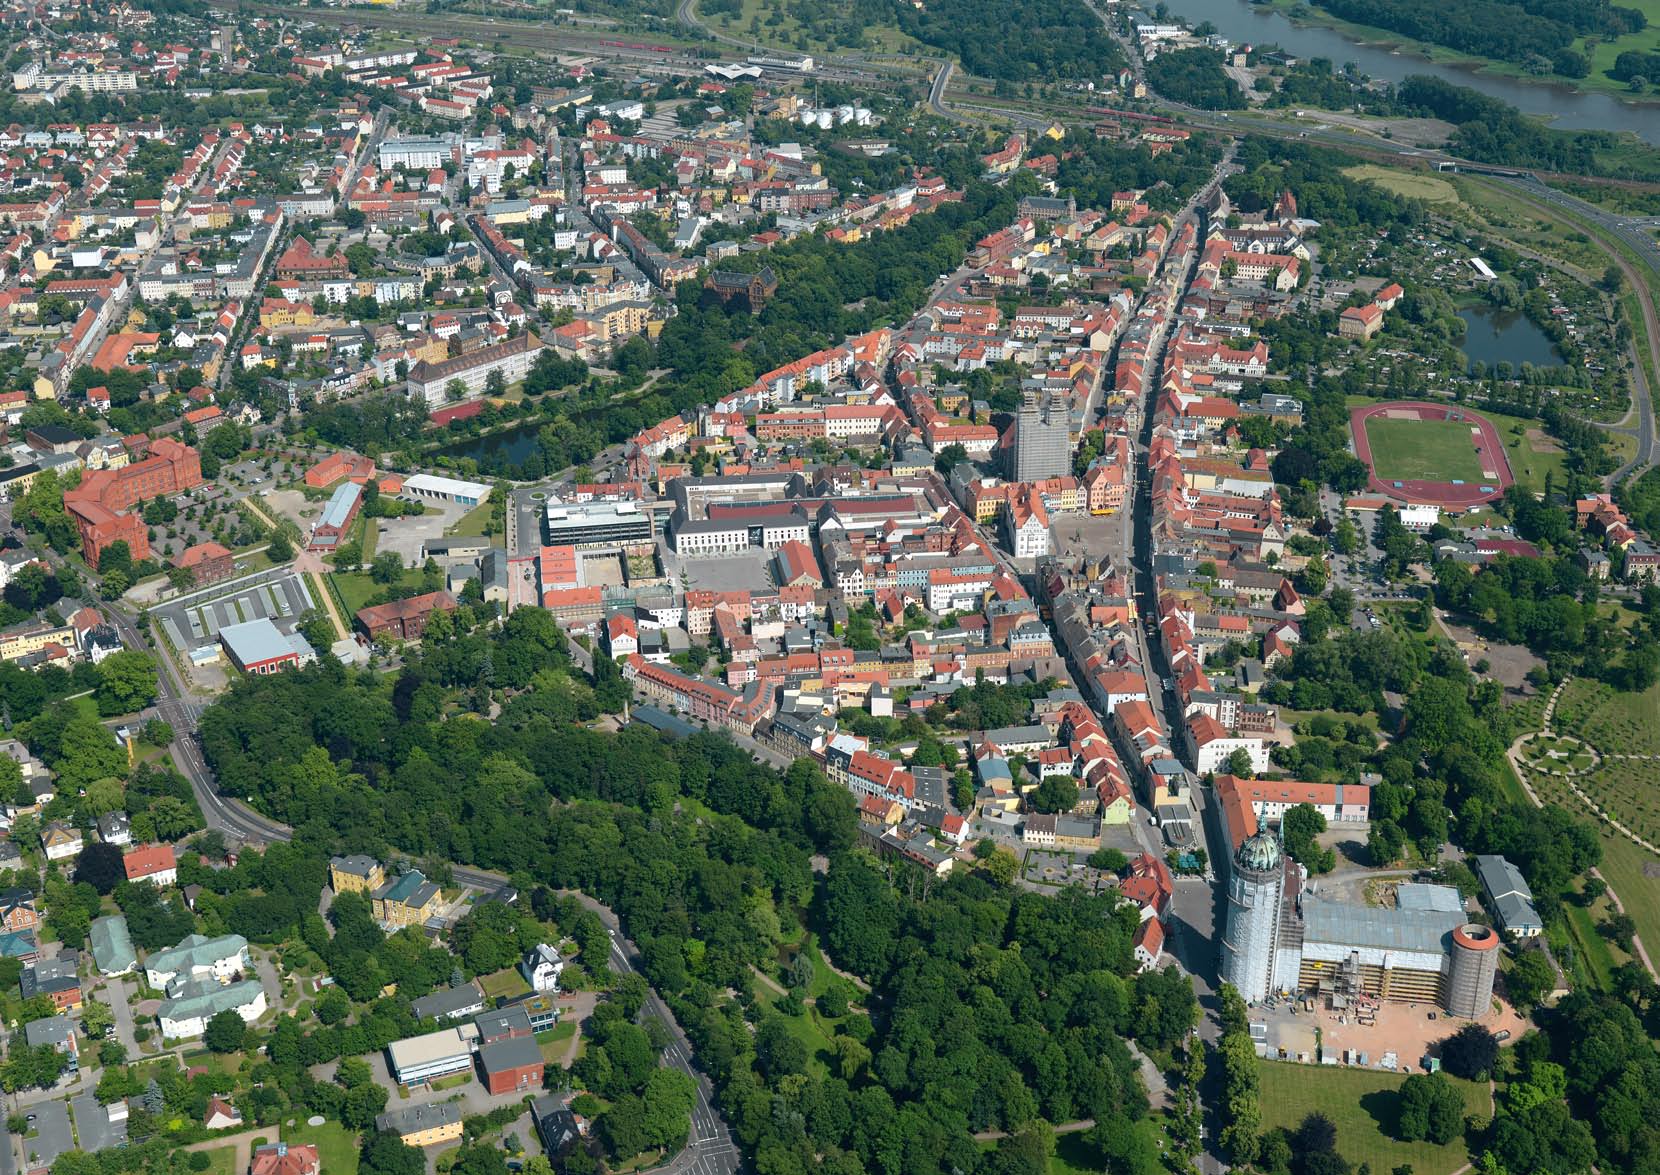 rischen Cranachhöfe und Lutherstätten, seit 1996 UNESCO-Welterbe geschützt, die Öffnung der Stadtbäche, die Vielzahl privater Haussanierungen und nicht zuletzt die Konzentration der Stadtverwaltung